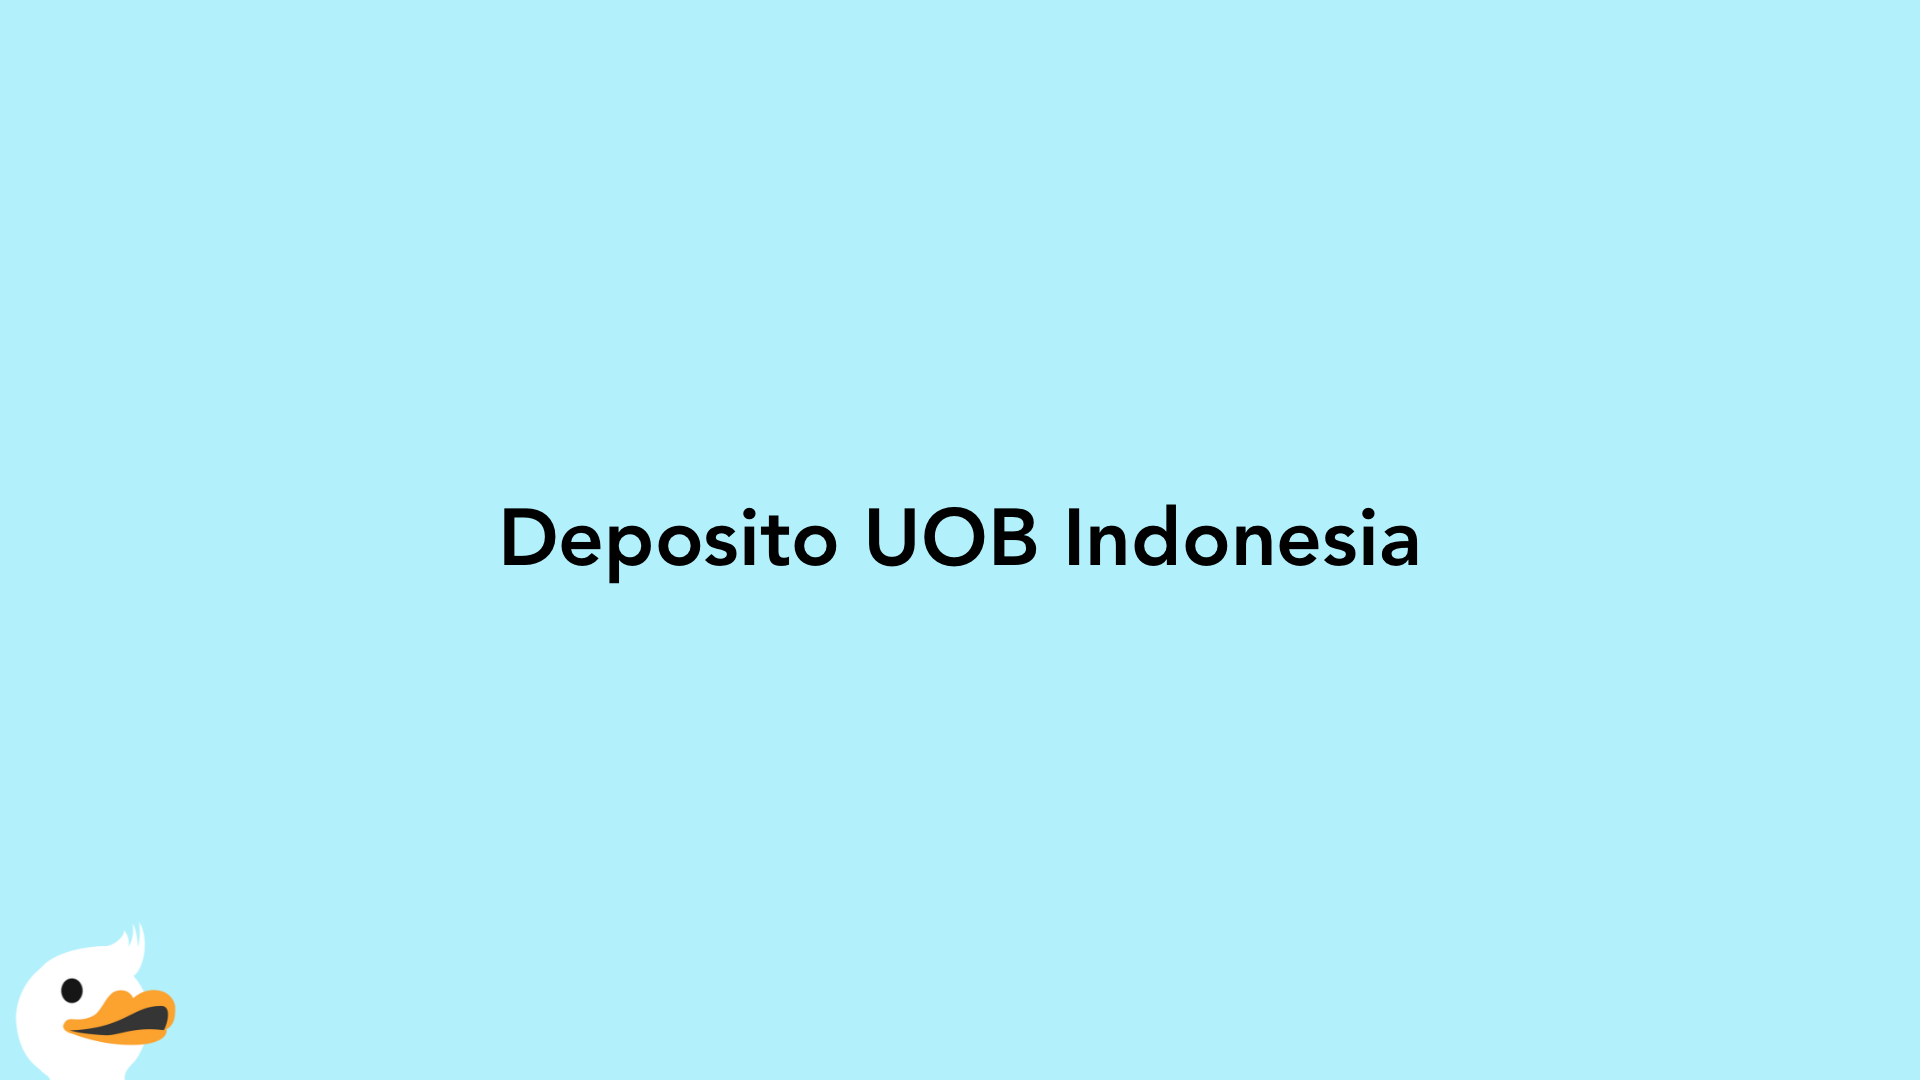 Deposito UOB Indonesia